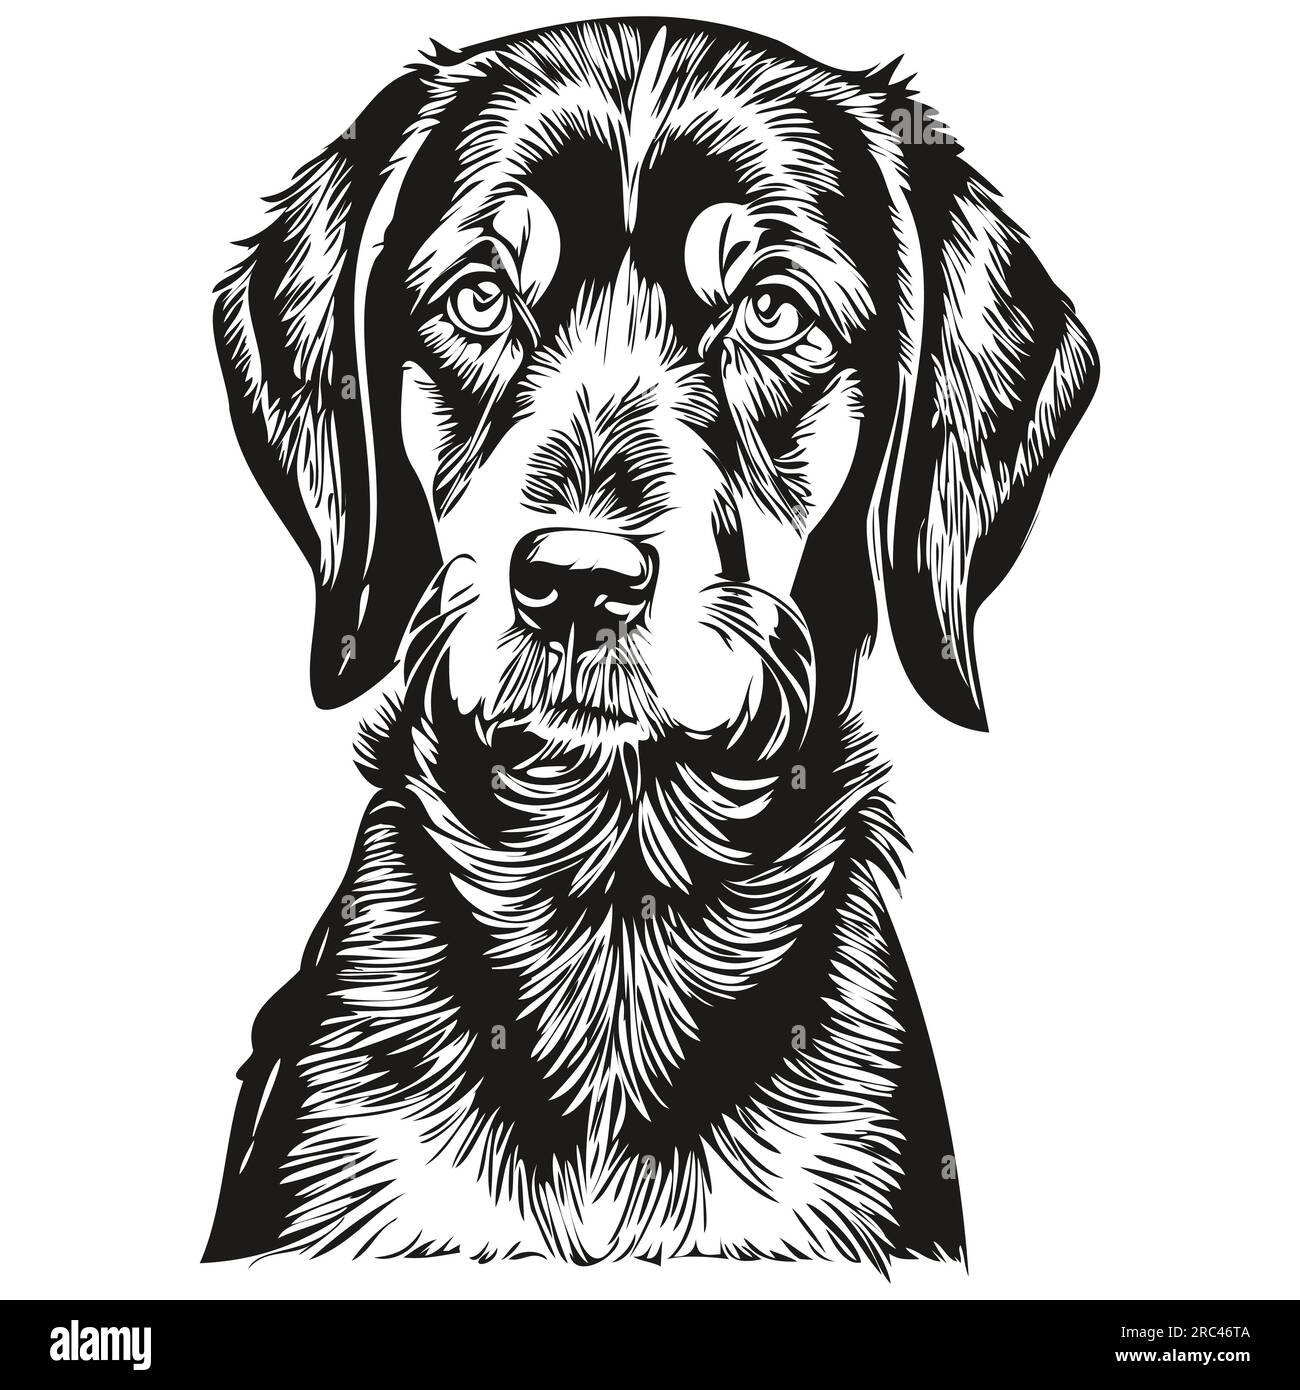 Noir et Tan Coonhound chien silhouette personnage d'animal de compagnie, clip art vecteur animaux dessin noir et blanc Illustration de Vecteur